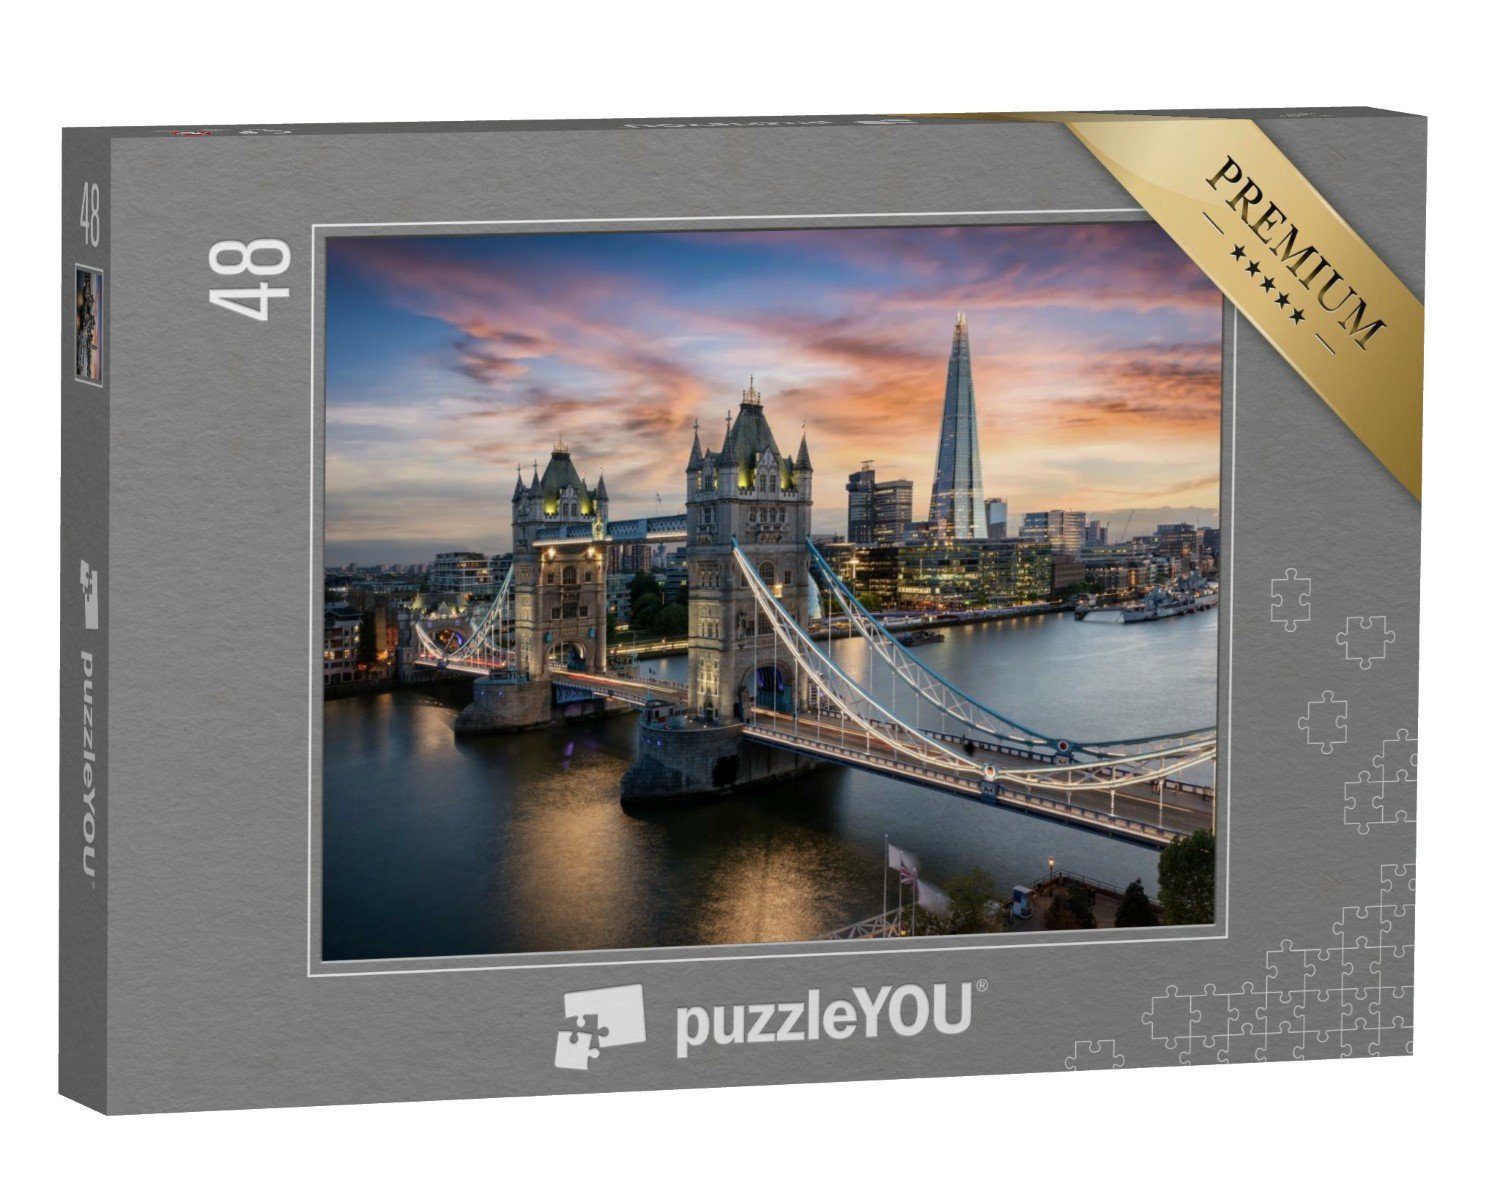 puzzleYOU Puzzle Blick auf die Tower Bridge, London, England, 48 Puzzleteile, puzzleYOU-Kollektionen Europa, Städte, London, Brücken, England